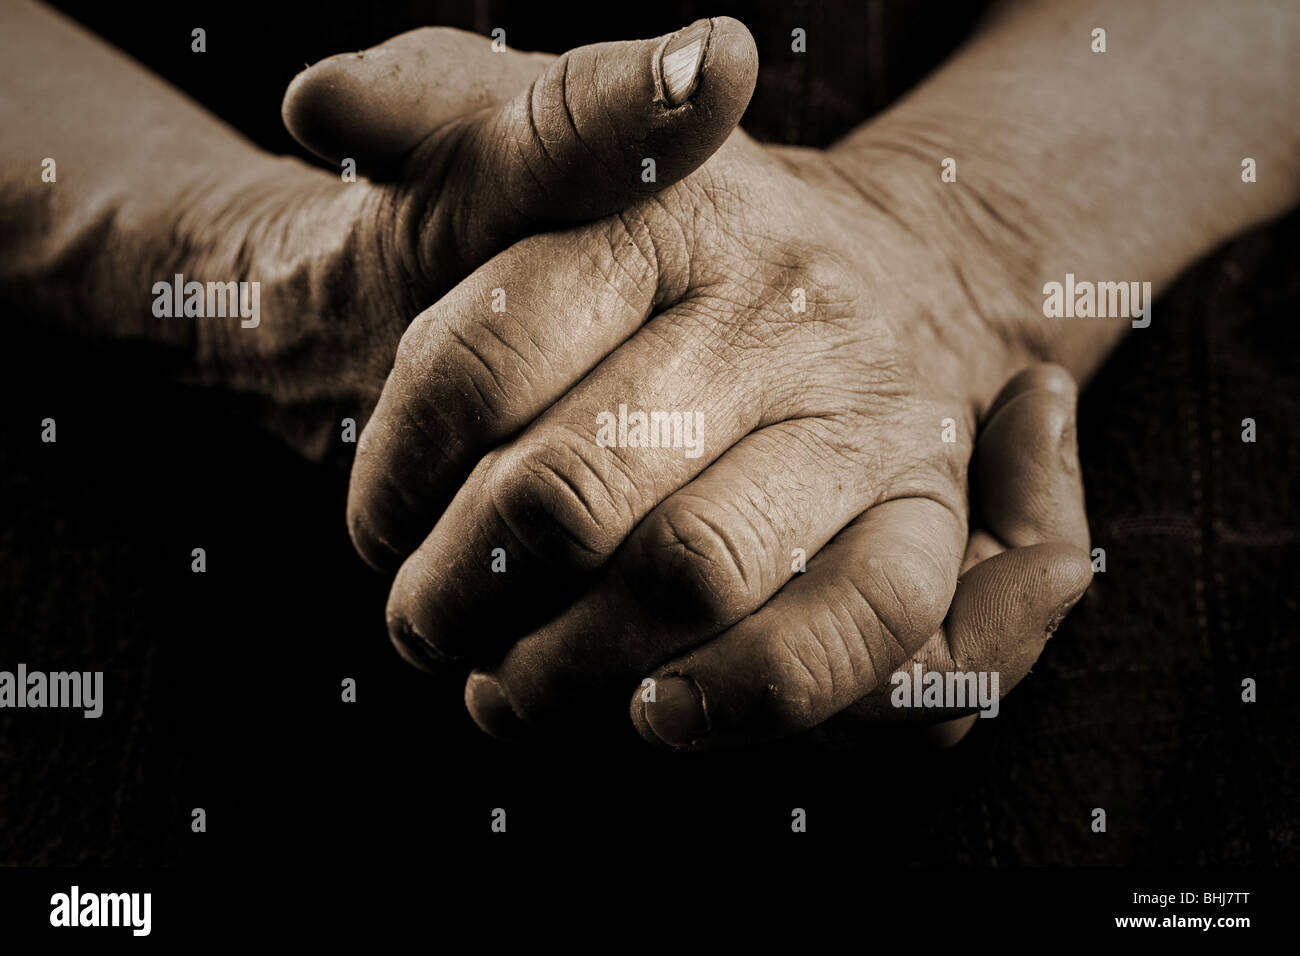 https://c8.alamy.com/comp/BHJ7TT/close-up-of-an-old-womans-hands-BHJ7TT.jpg